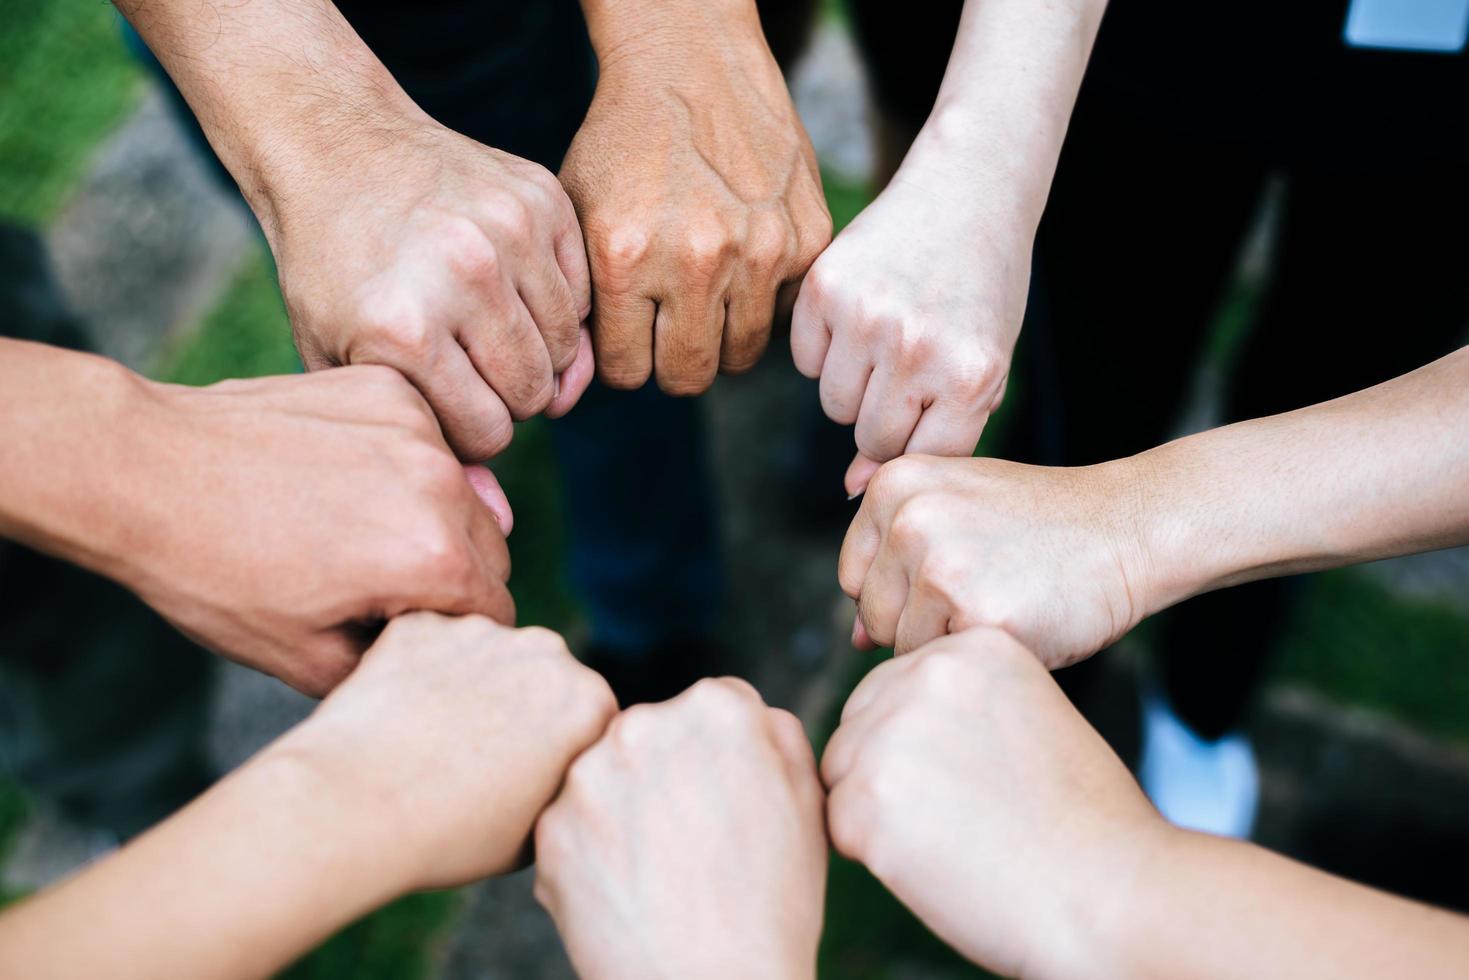 Nahaufnahme der multiethnischen Gruppe, die mit den Händen zusammen steht foto